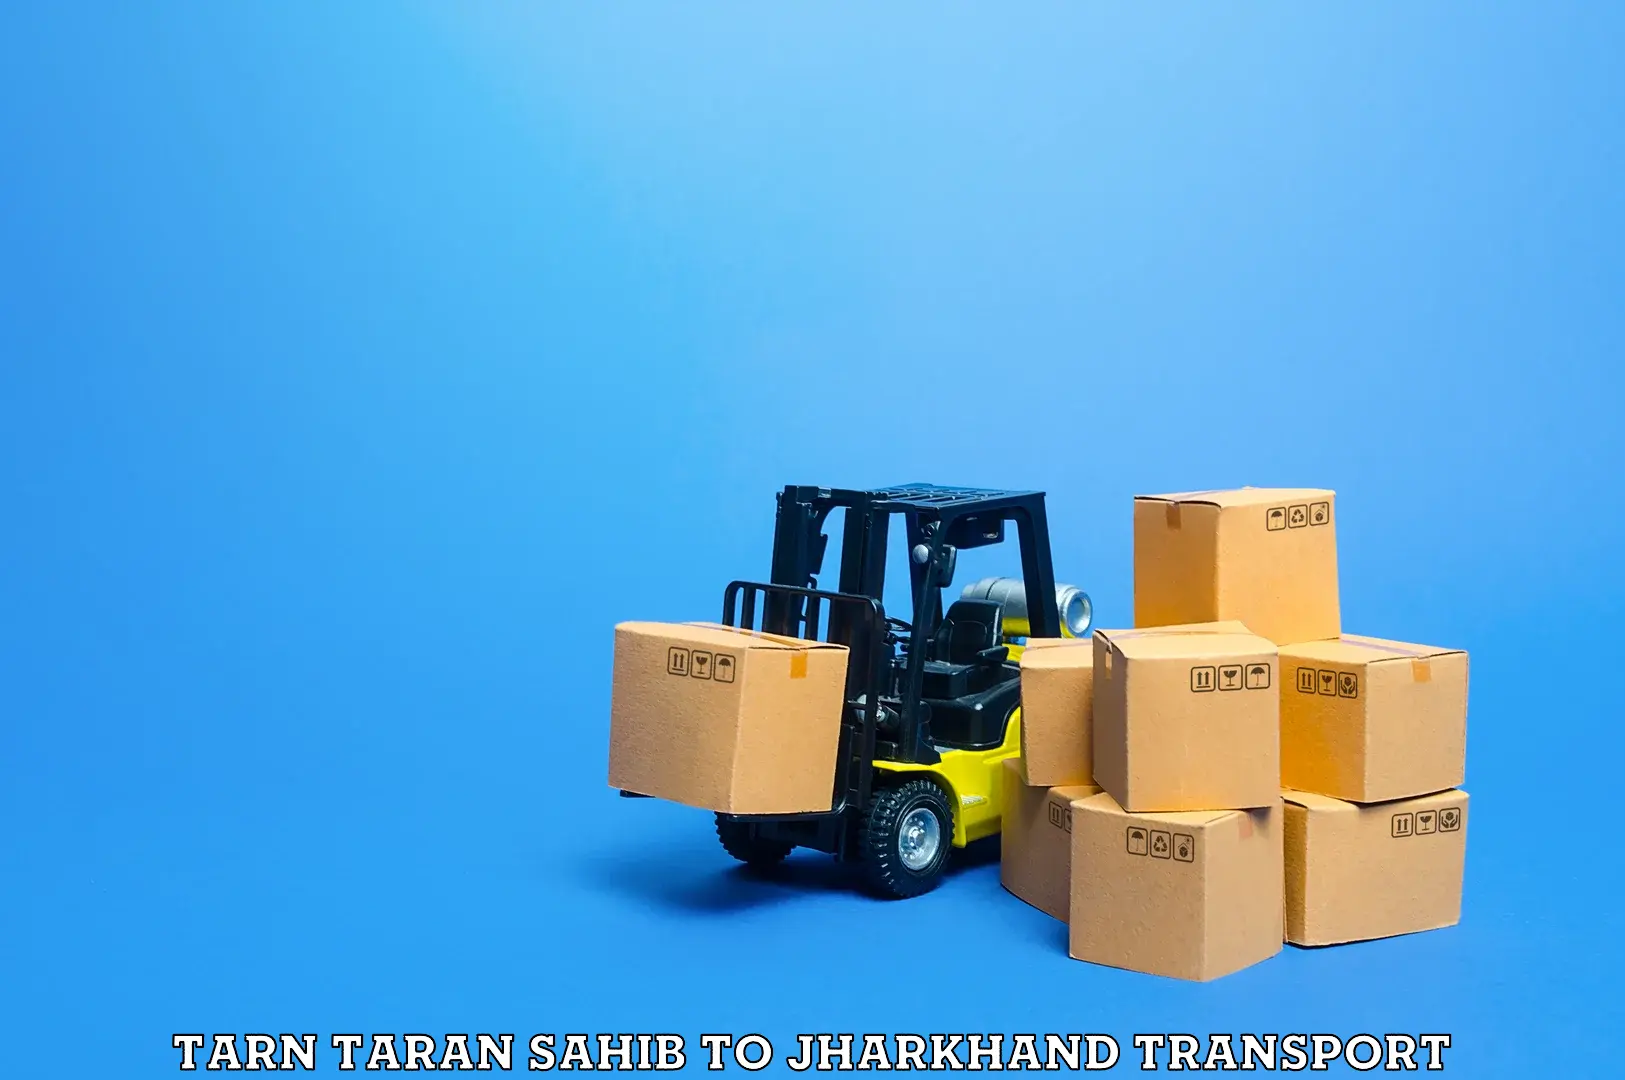 Bike shipping service Tarn Taran Sahib to Gumla